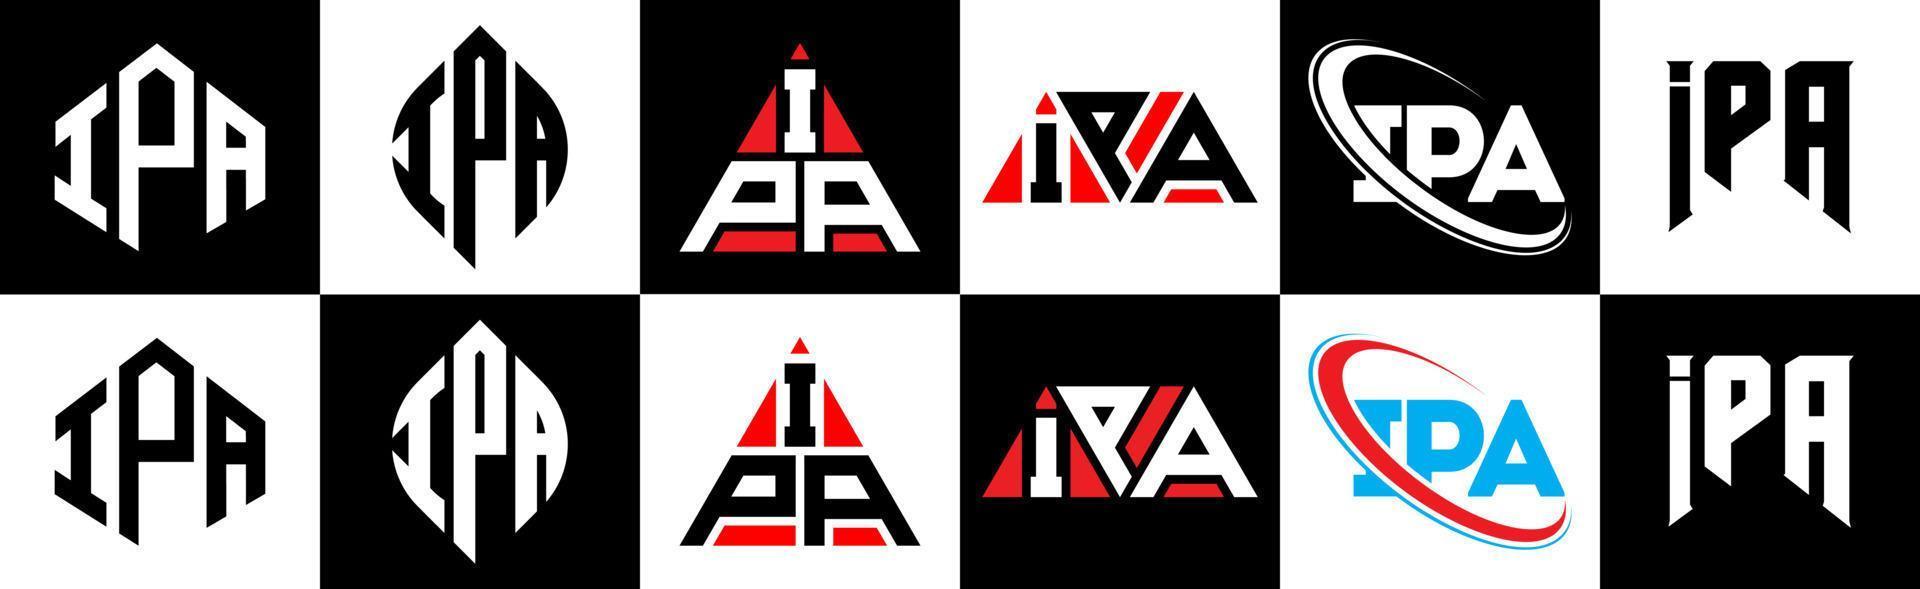 création de logo de lettre ipa en six styles. polygone ipa, cercle, triangle, hexagone, style plat et simple avec logo de lettre de variation de couleur noir et blanc dans un plan de travail. logo ipa minimaliste et classique vecteur